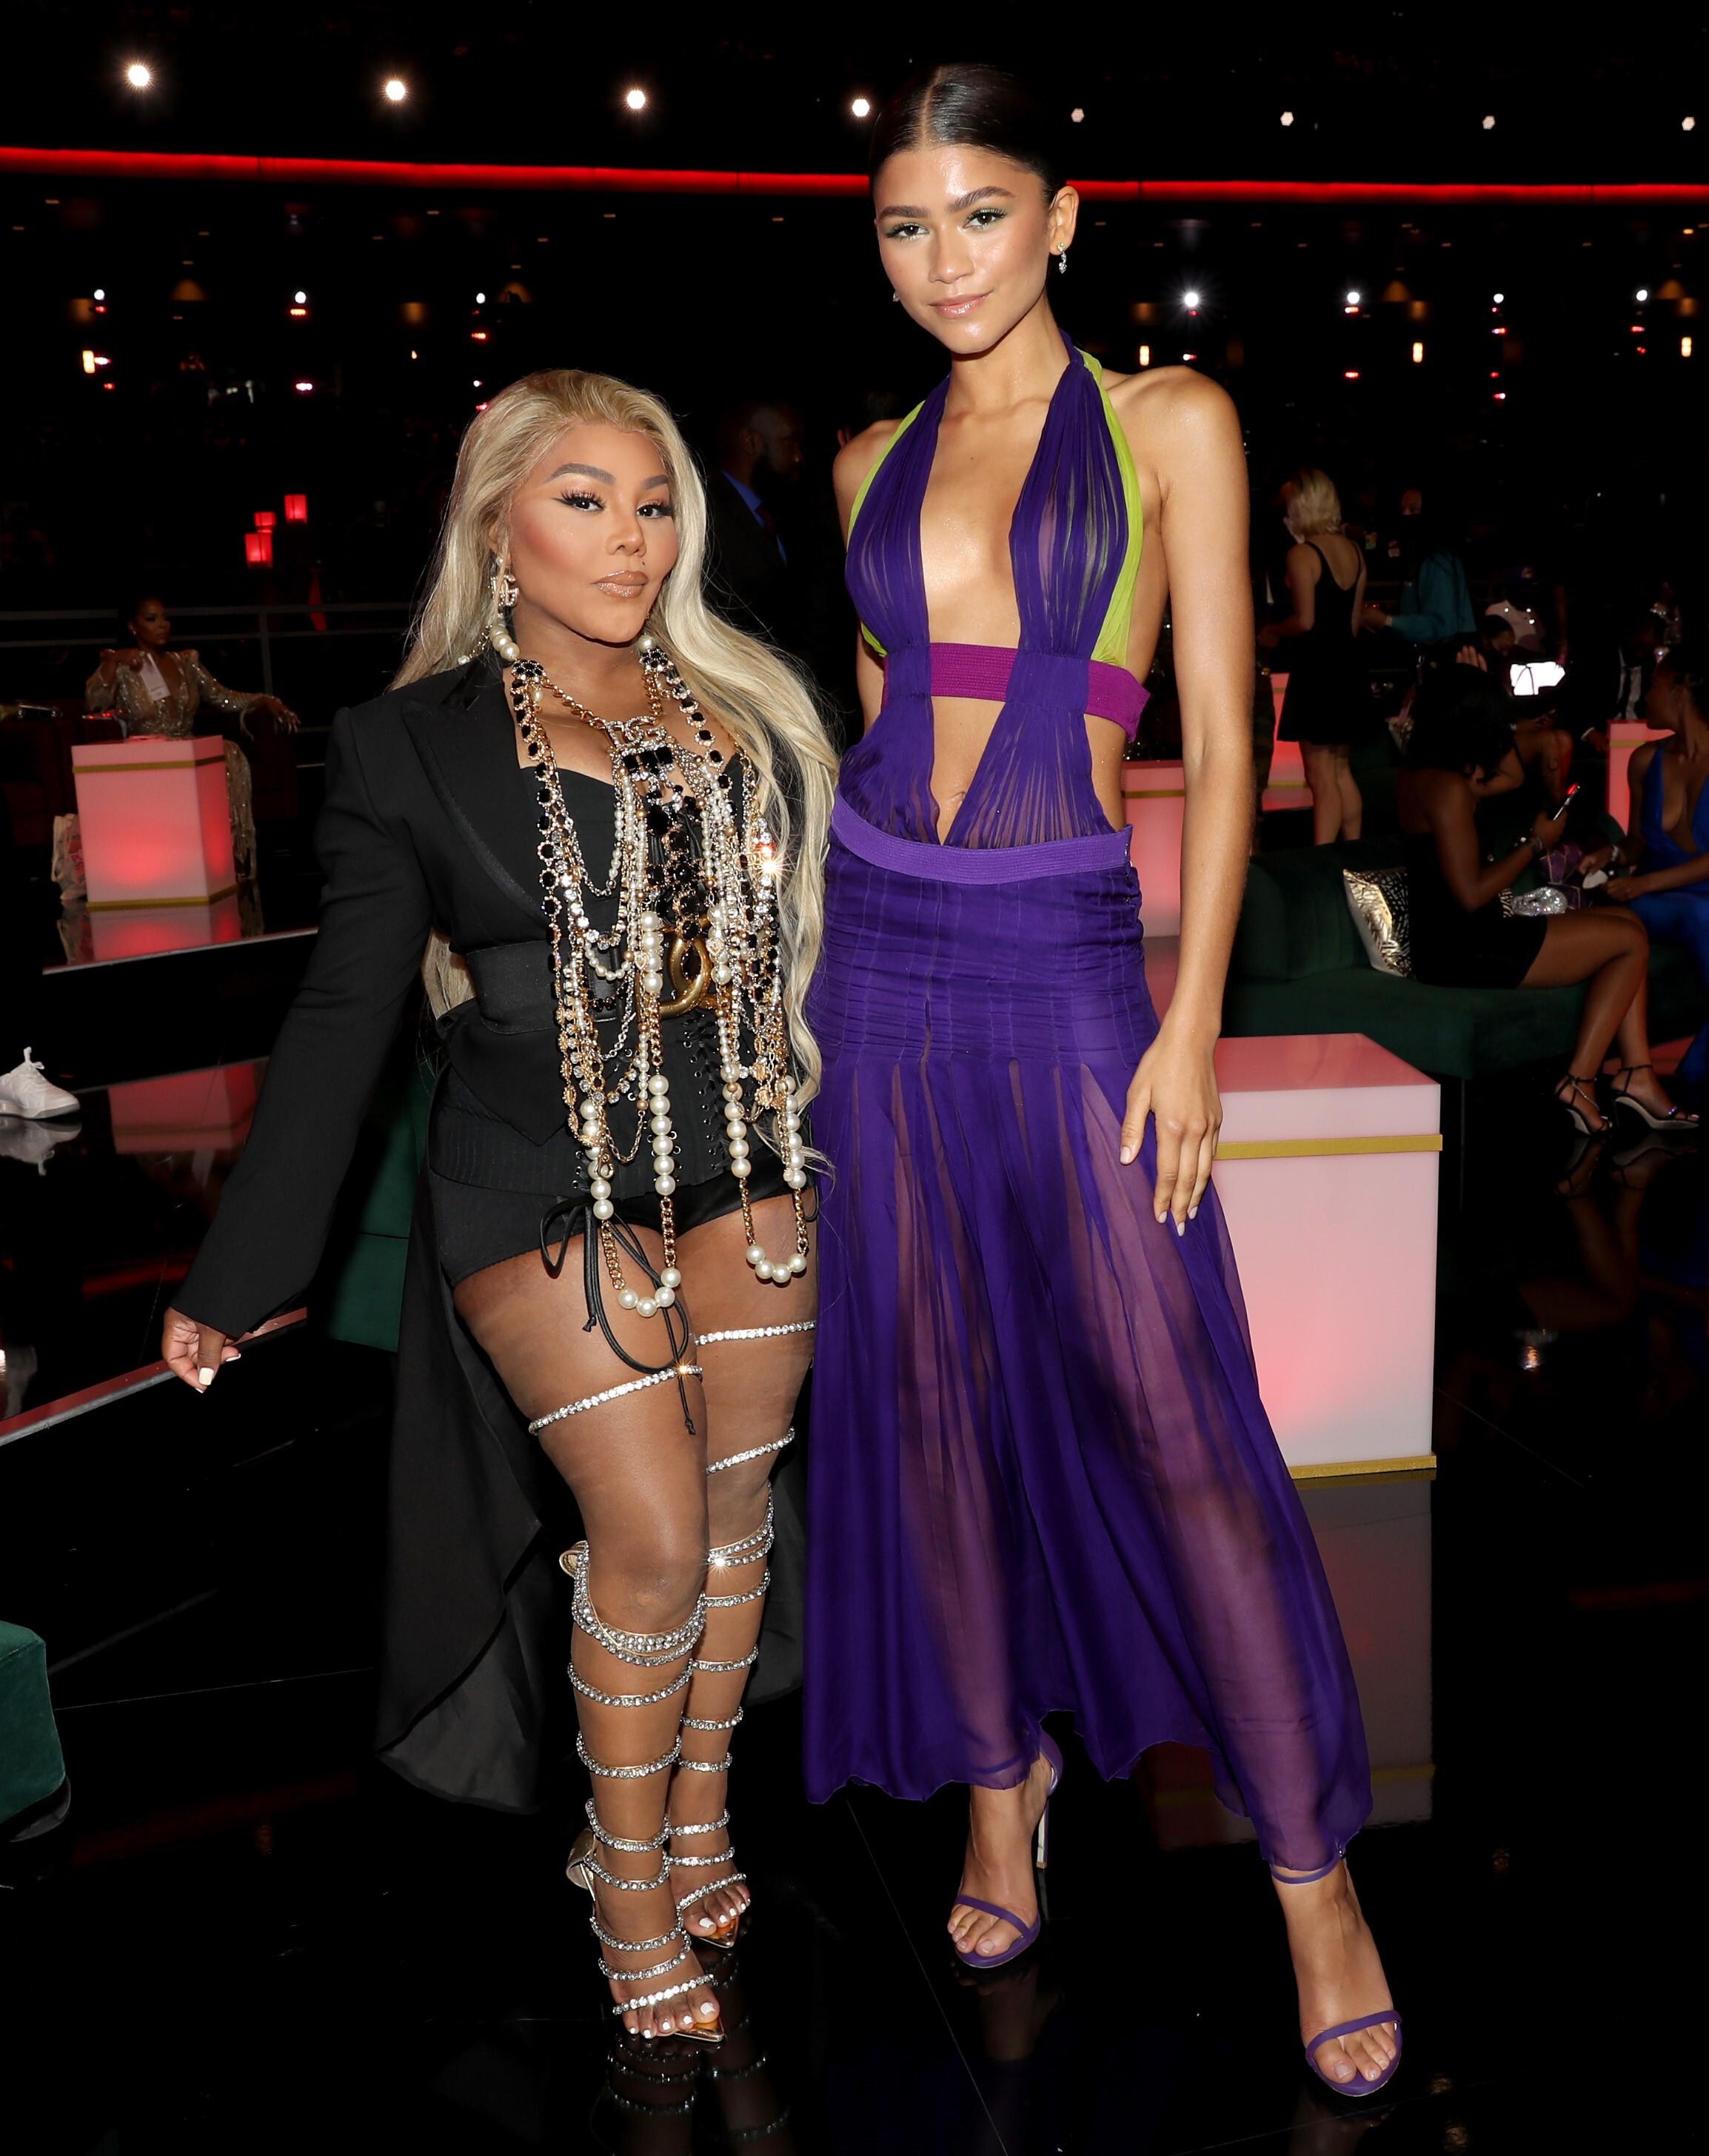 IKONISK ØYEBLIKK: Under BET Awards 2021 fikk Zendaya mye oppmerksomhet for sitt valg av kjole. Hun troppet opp i en Versace-kjole fra arkivet, som Beyoncé gjorde ikonisk under en opptreden på samme prisutdeling i 2003. Her er Zendaya avbildet med en annen musikalsk legende, rapperen Lil’ Kim.